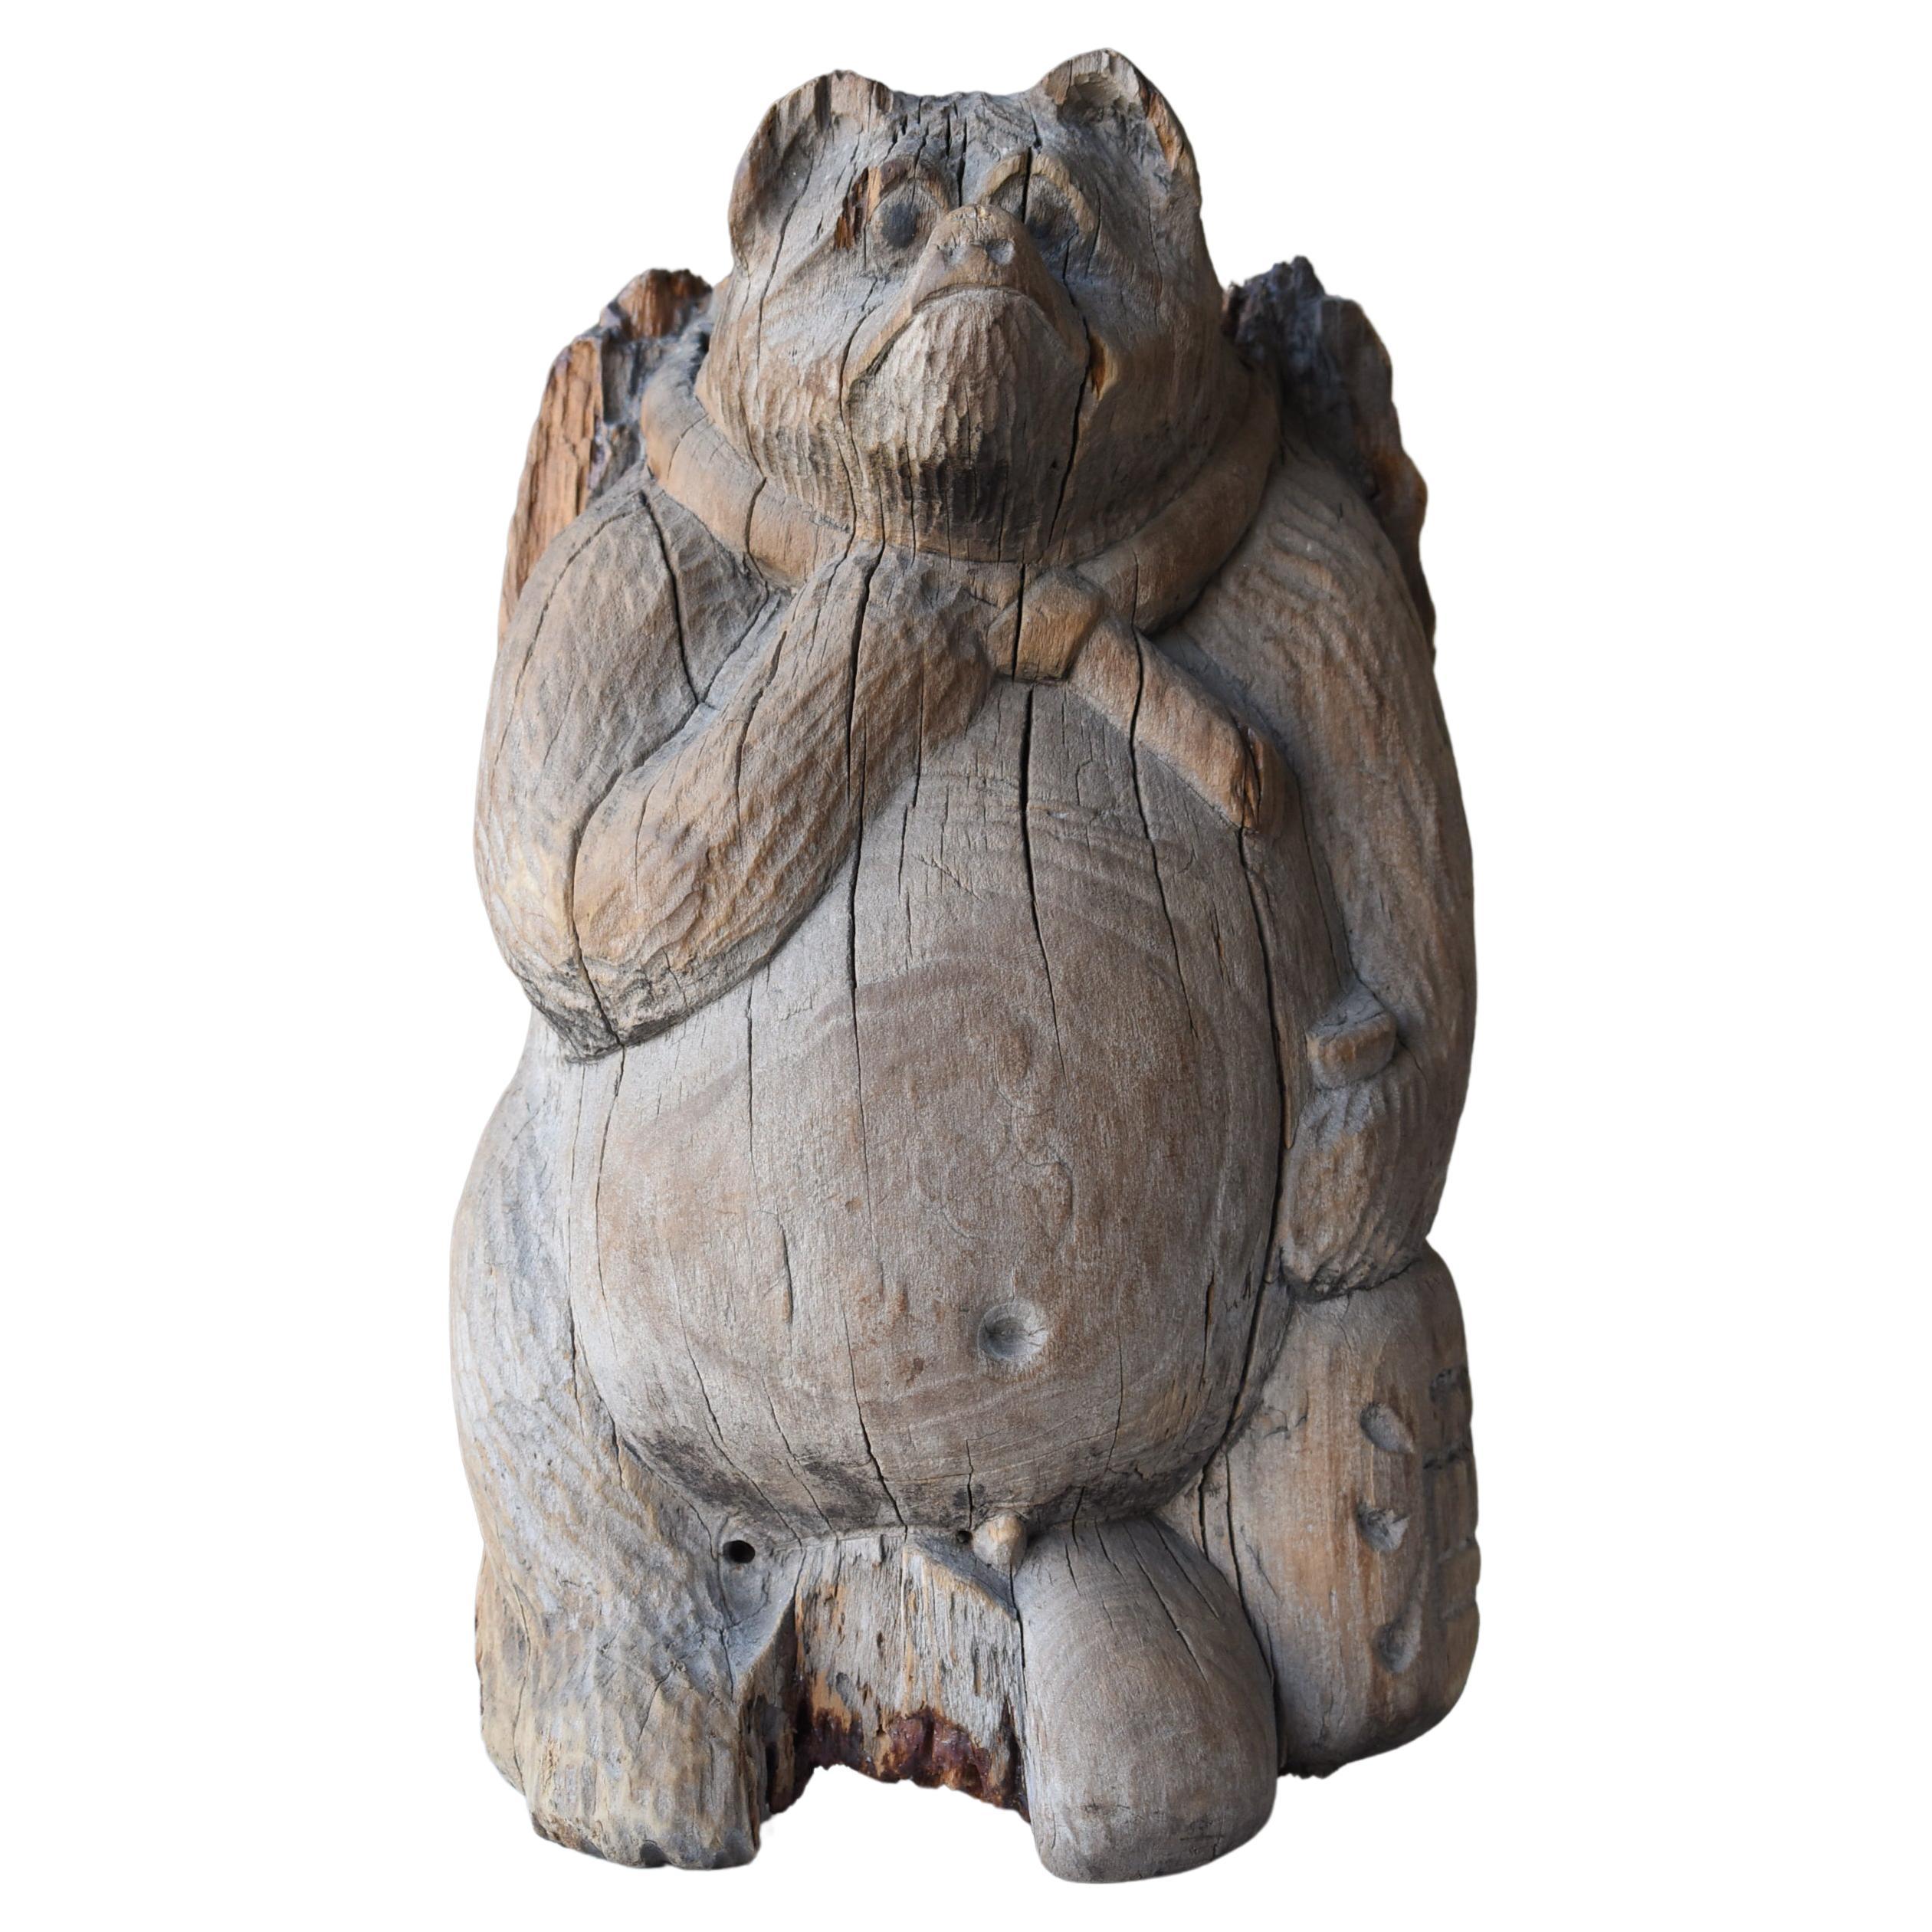 Ancien objet japonais sculpté en bois, chien de raton laveur, années 1900-1940, Mingei Wabi Sabi